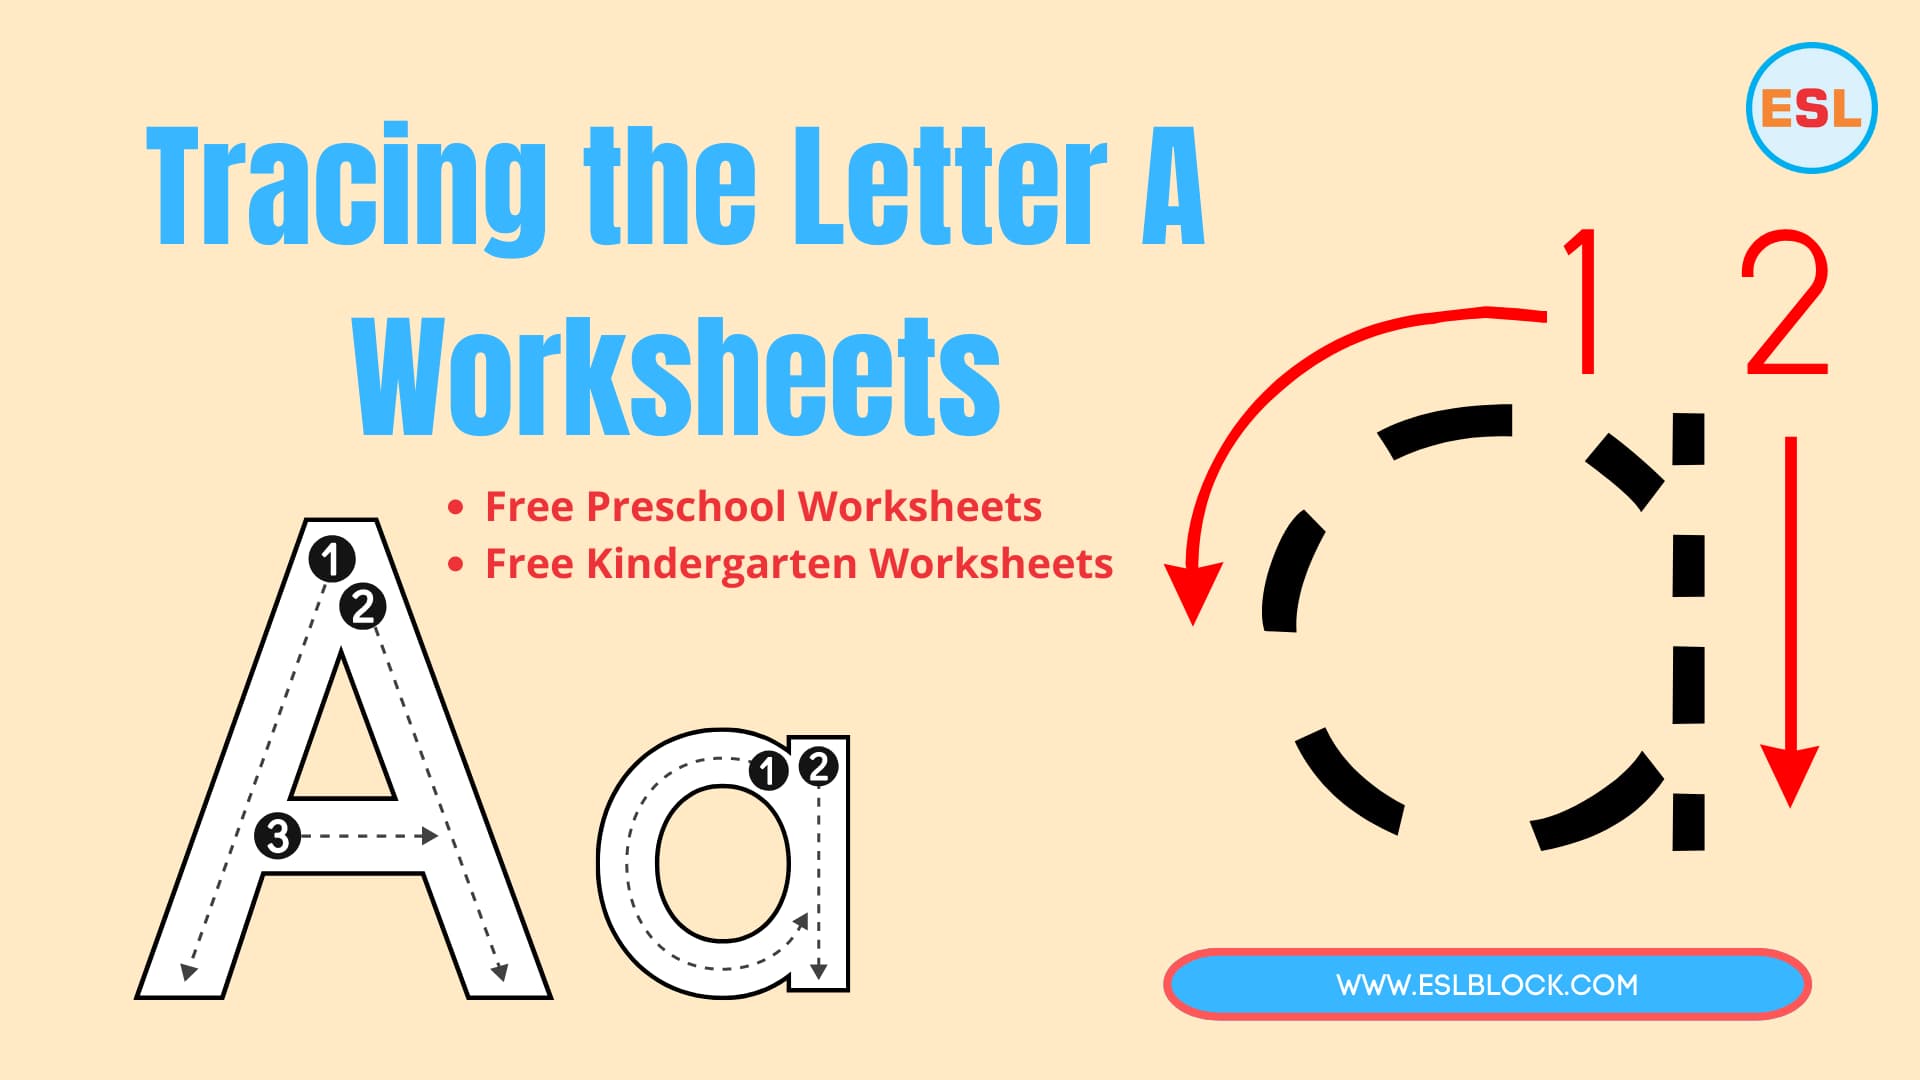 Free Worksheets, Kindergarten Worksheets, Preschool Worksheets, Tracing the Letter A, Tracing the Letter A Worksheets, Tracing Worksheets, Worksheets